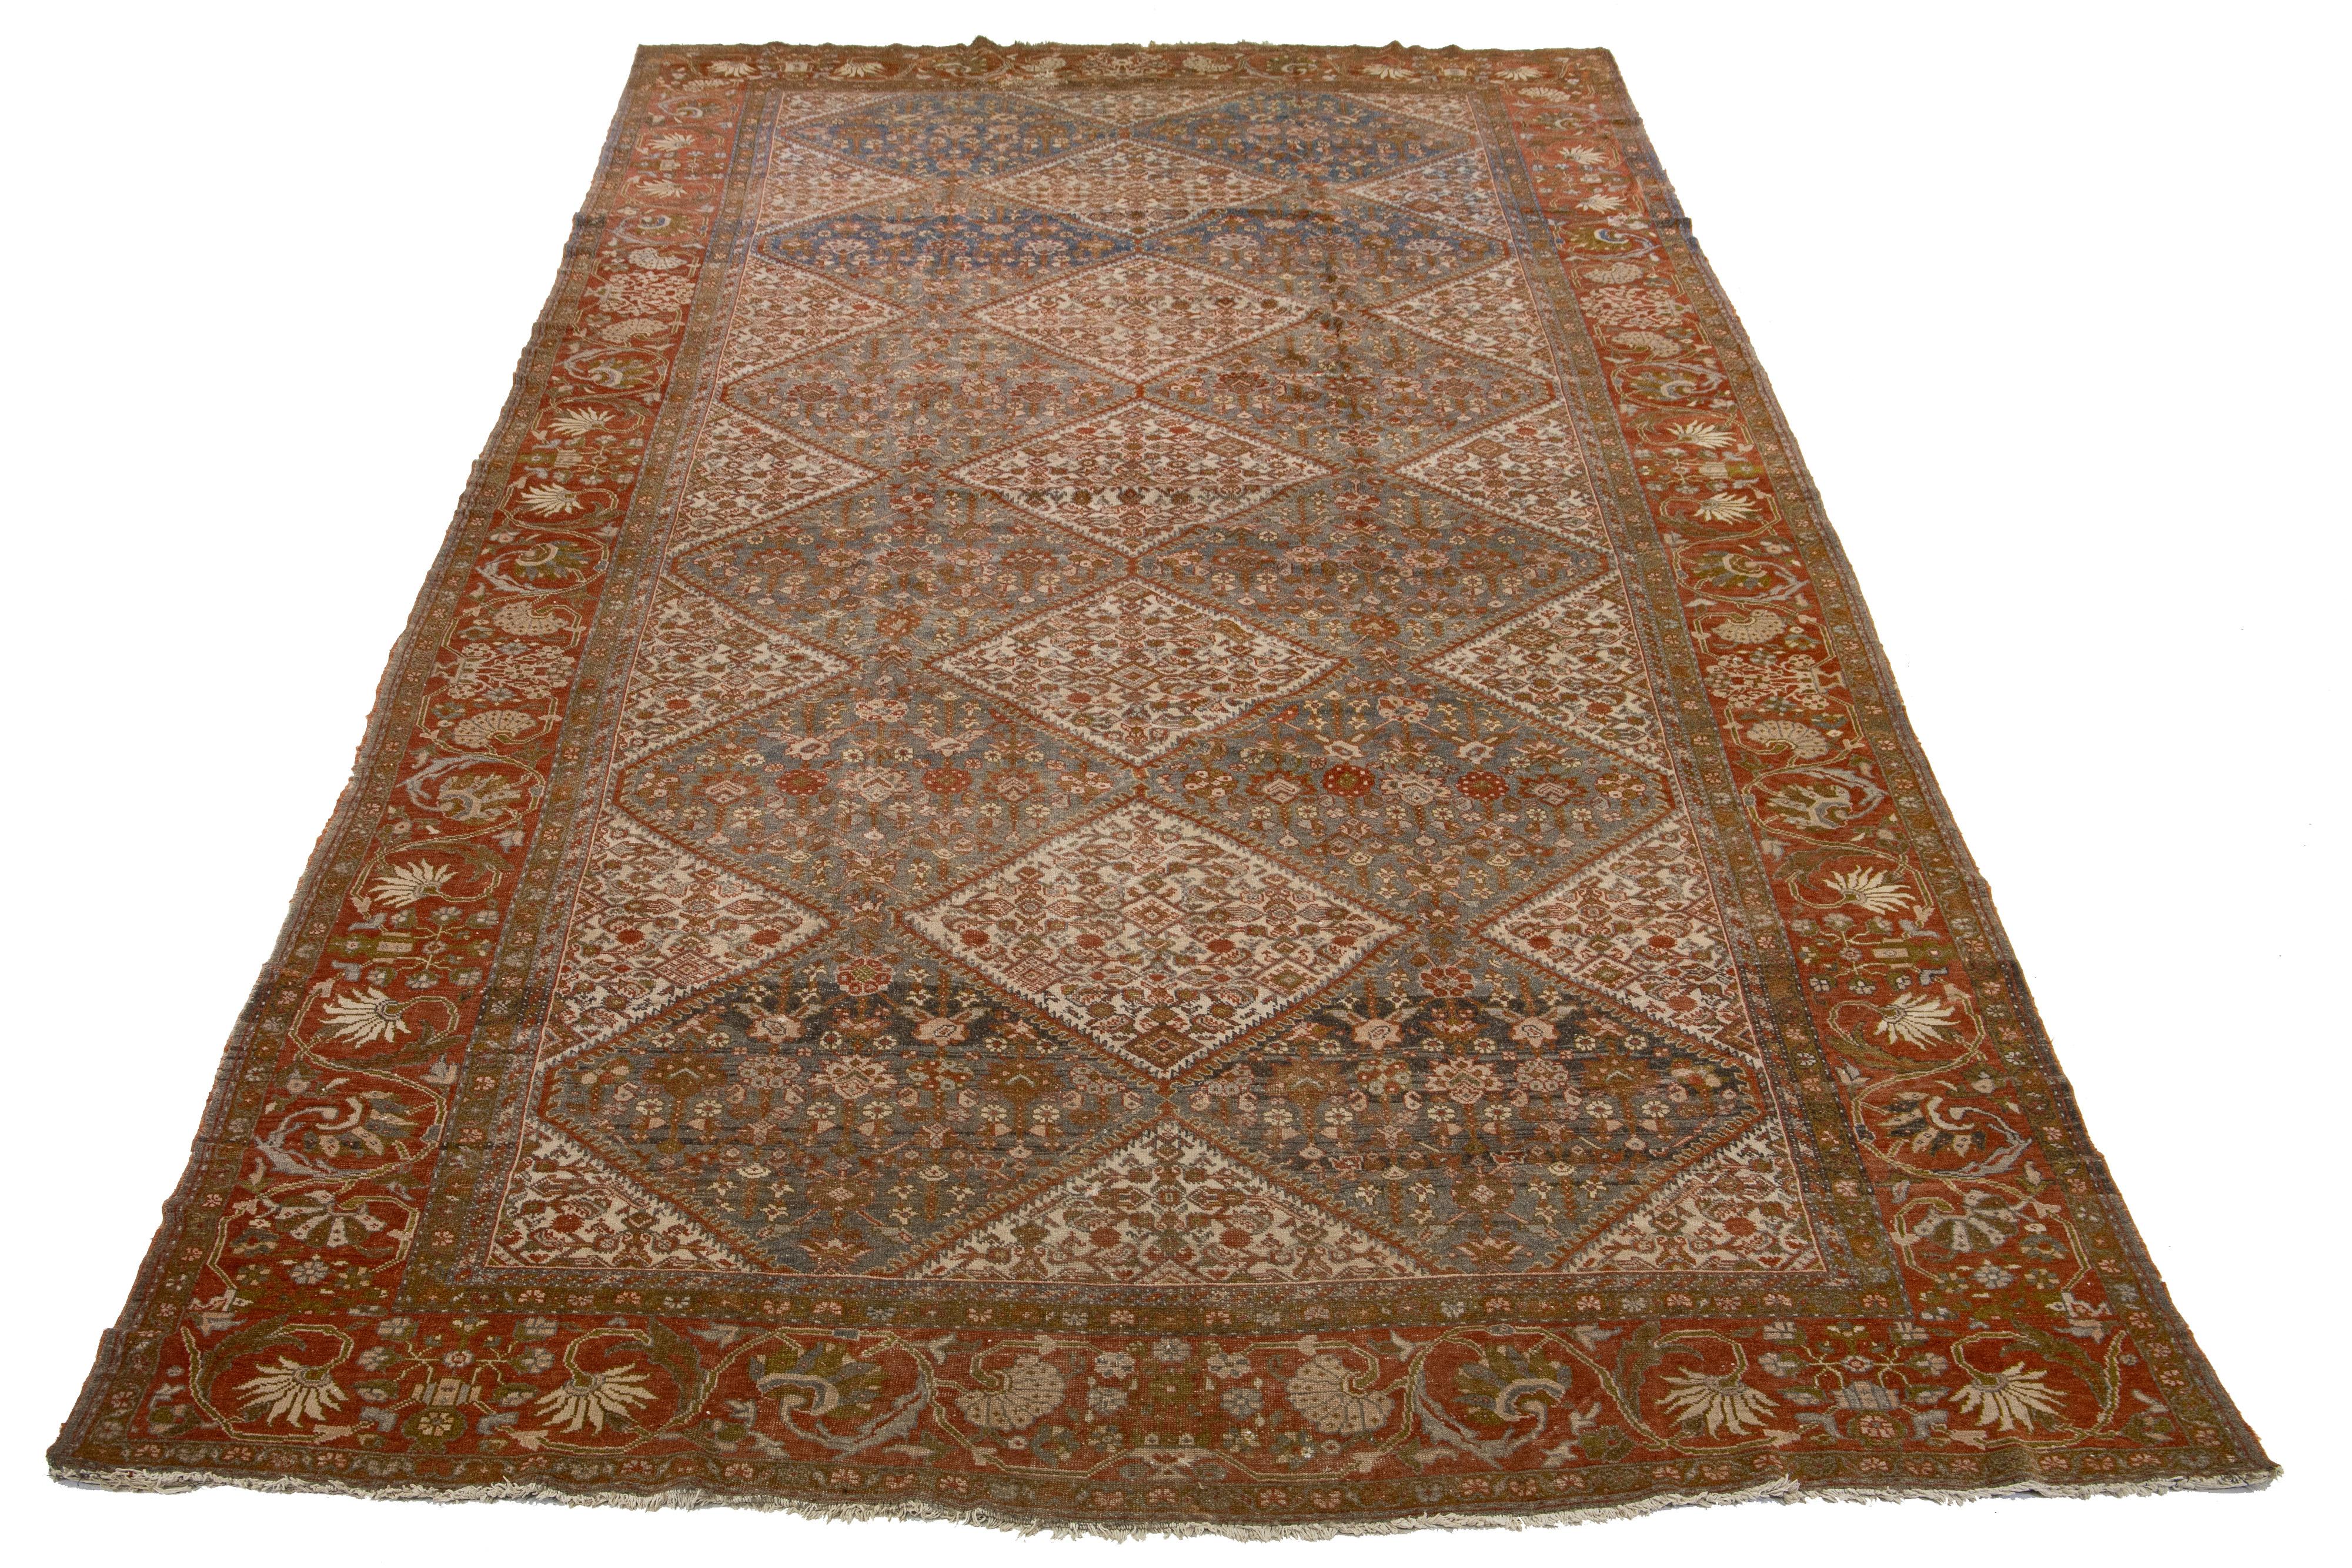 Dieser schöne übergroße antike Mahal-Teppich aus handgeknüpfter Wolle mit blauem Feld. Der Perserteppich zeigt ein klassisches Blumenmotiv in Beige, Rost und Braun.

Dieser Teppich misst 10' x 20'2